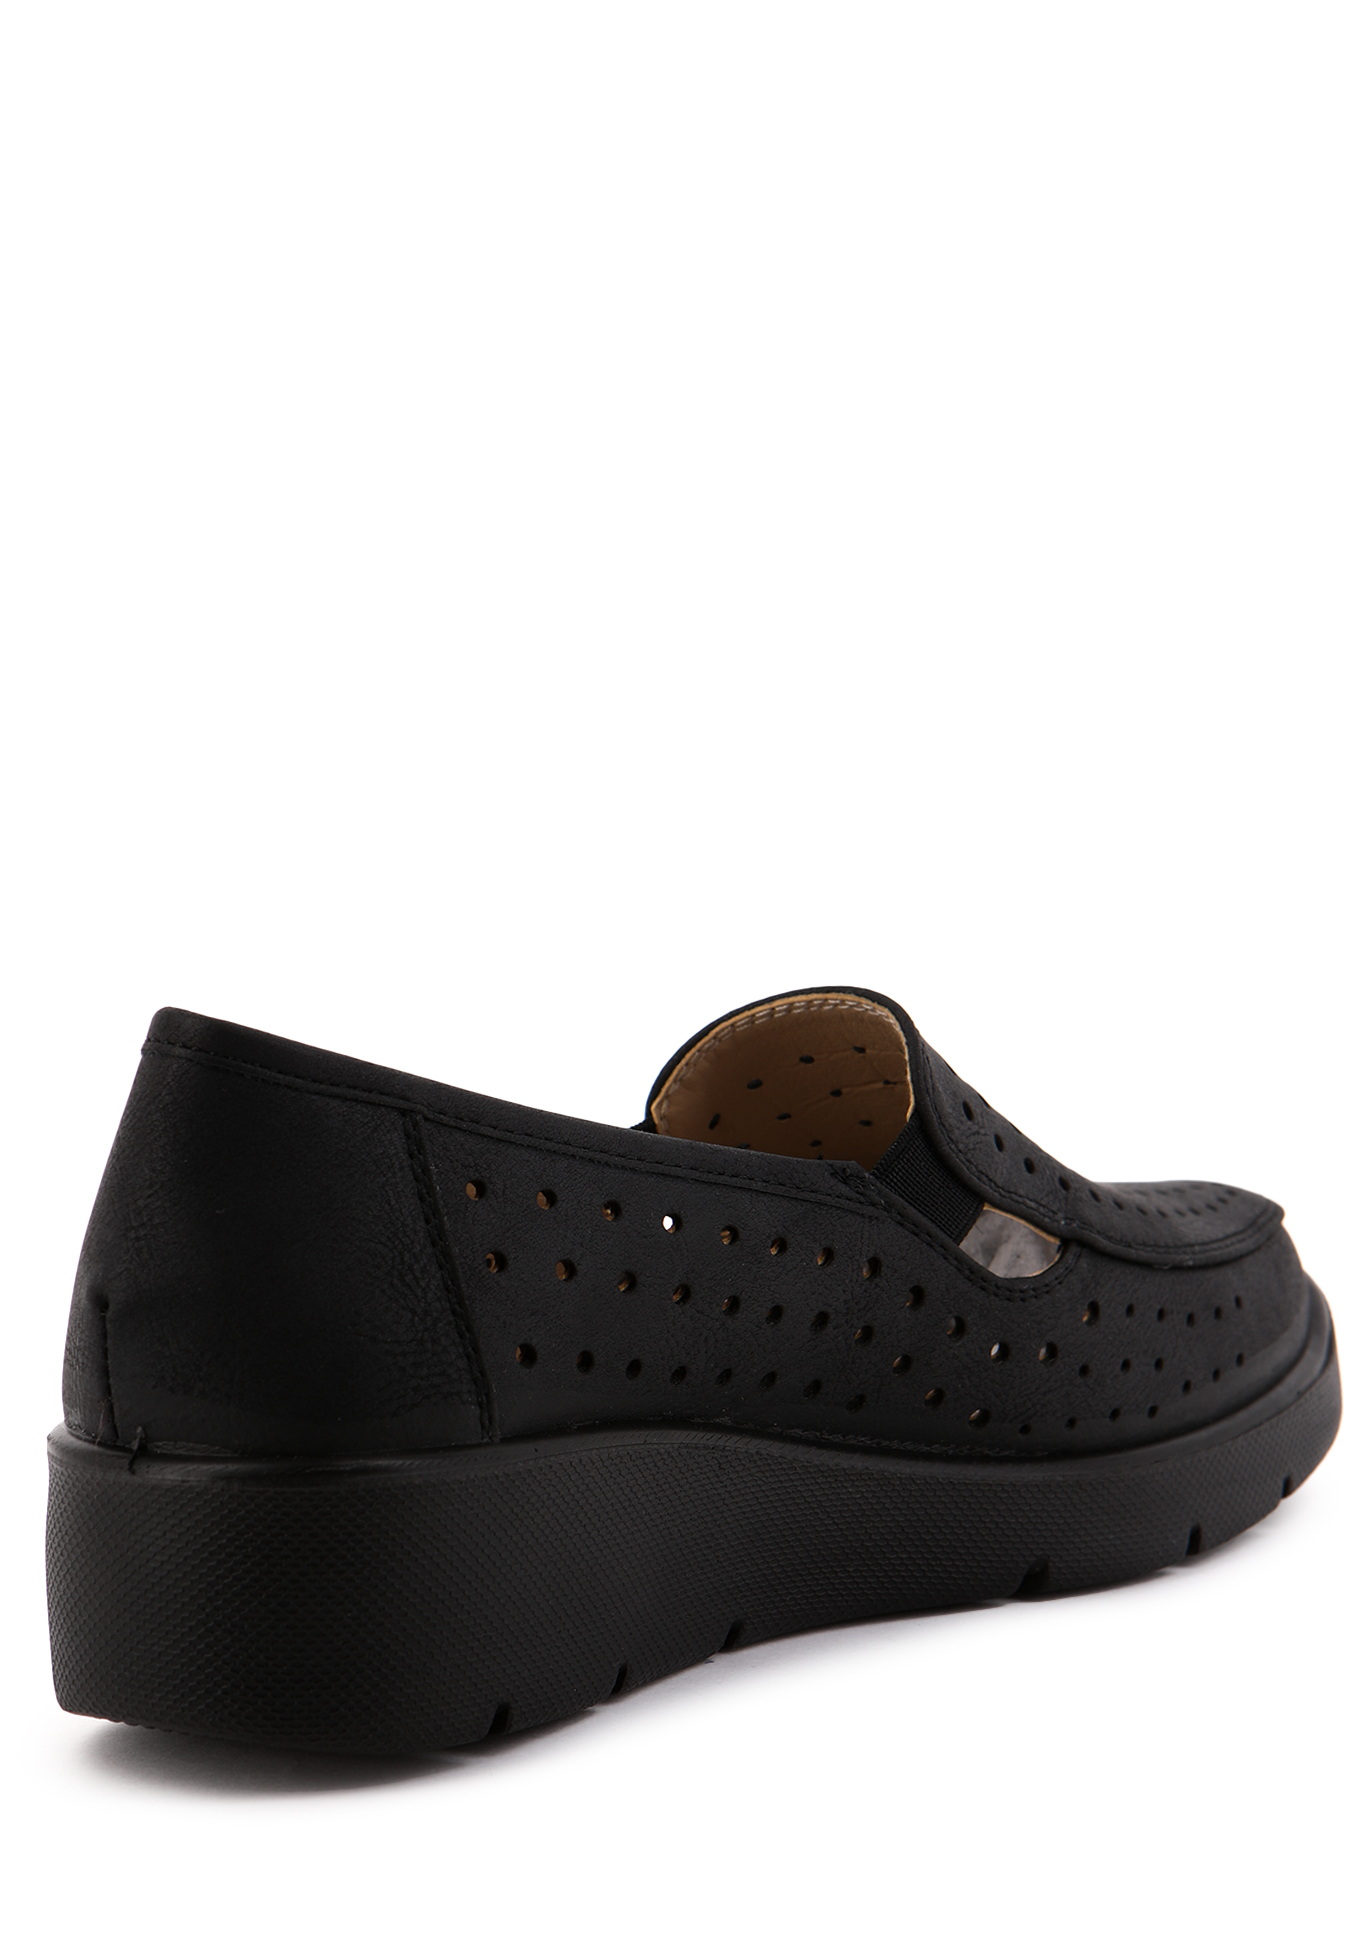 Туфли летние женские "Рабиана" Mon Ami, размер 37, цвет черный - фото 3